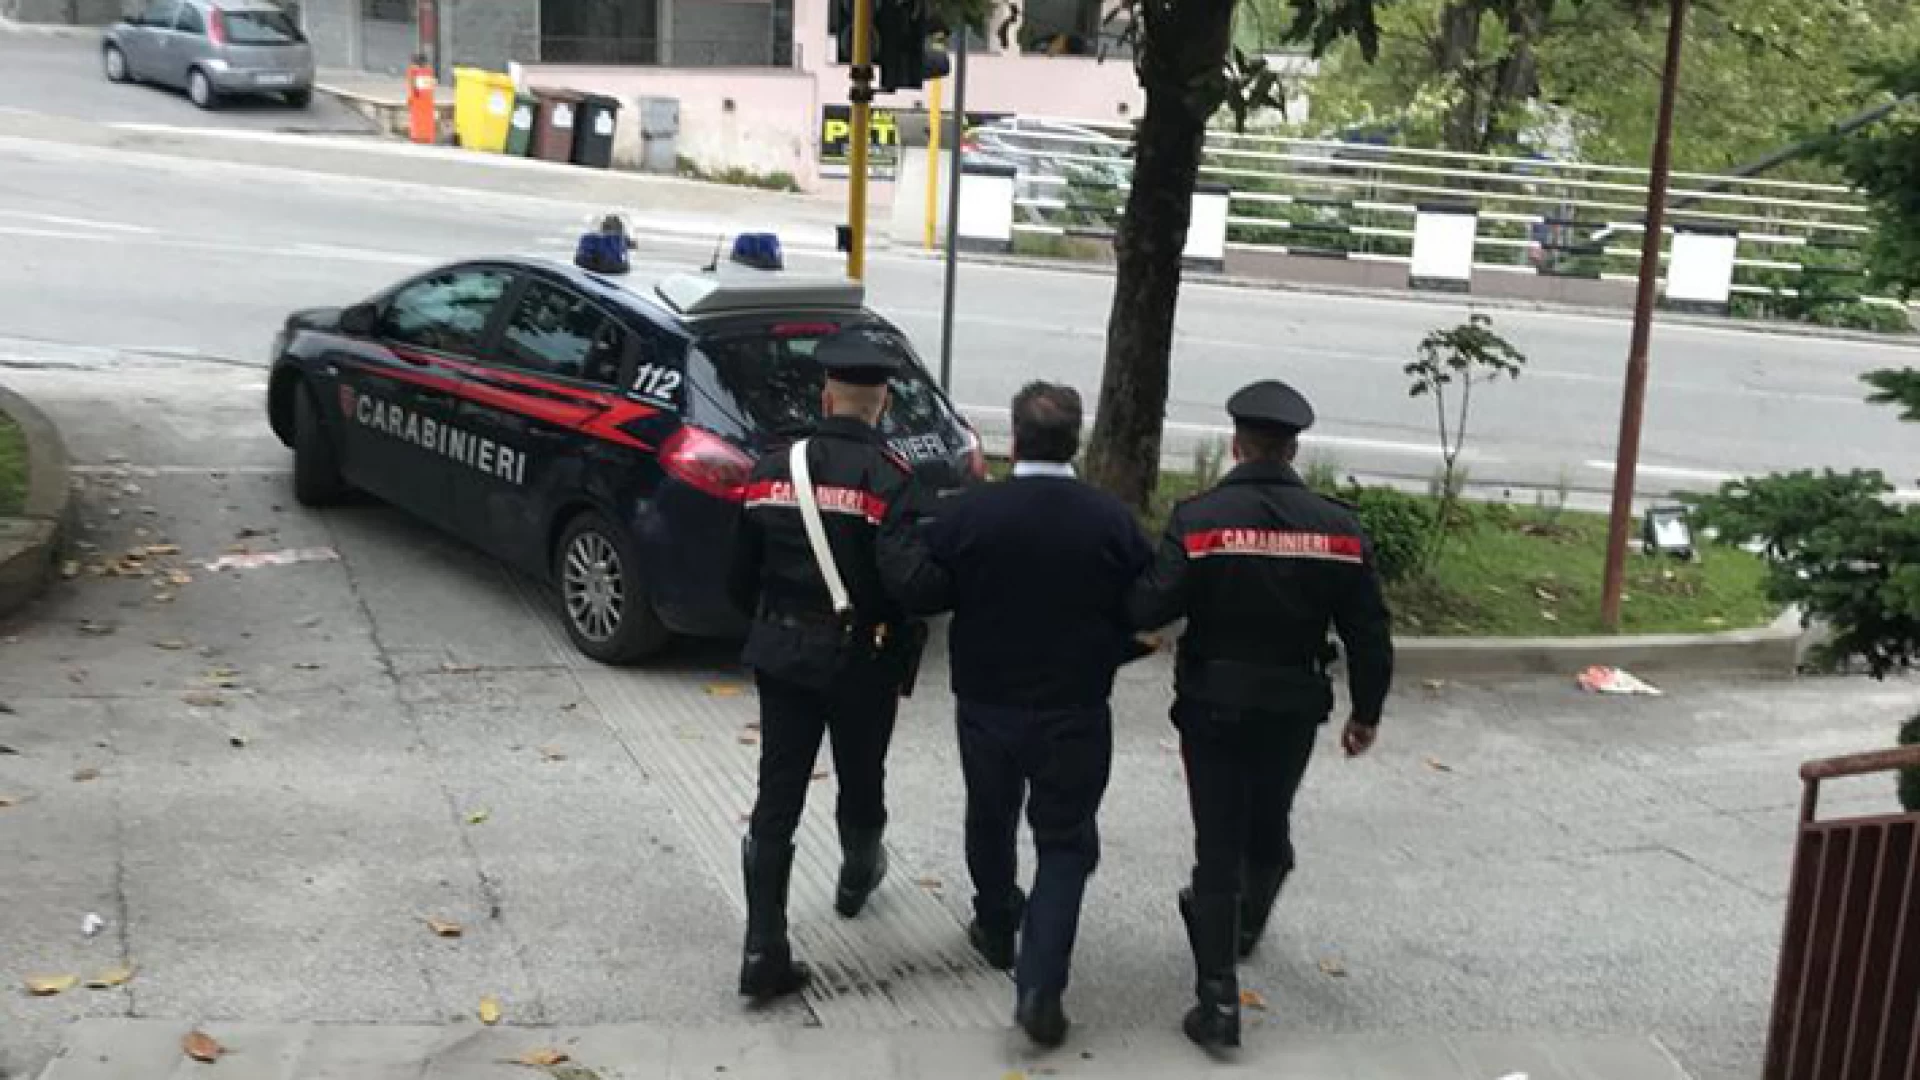 Avezzano: ricercato da tre mesi. I Carabinieri arrestano uomo di 26 anni